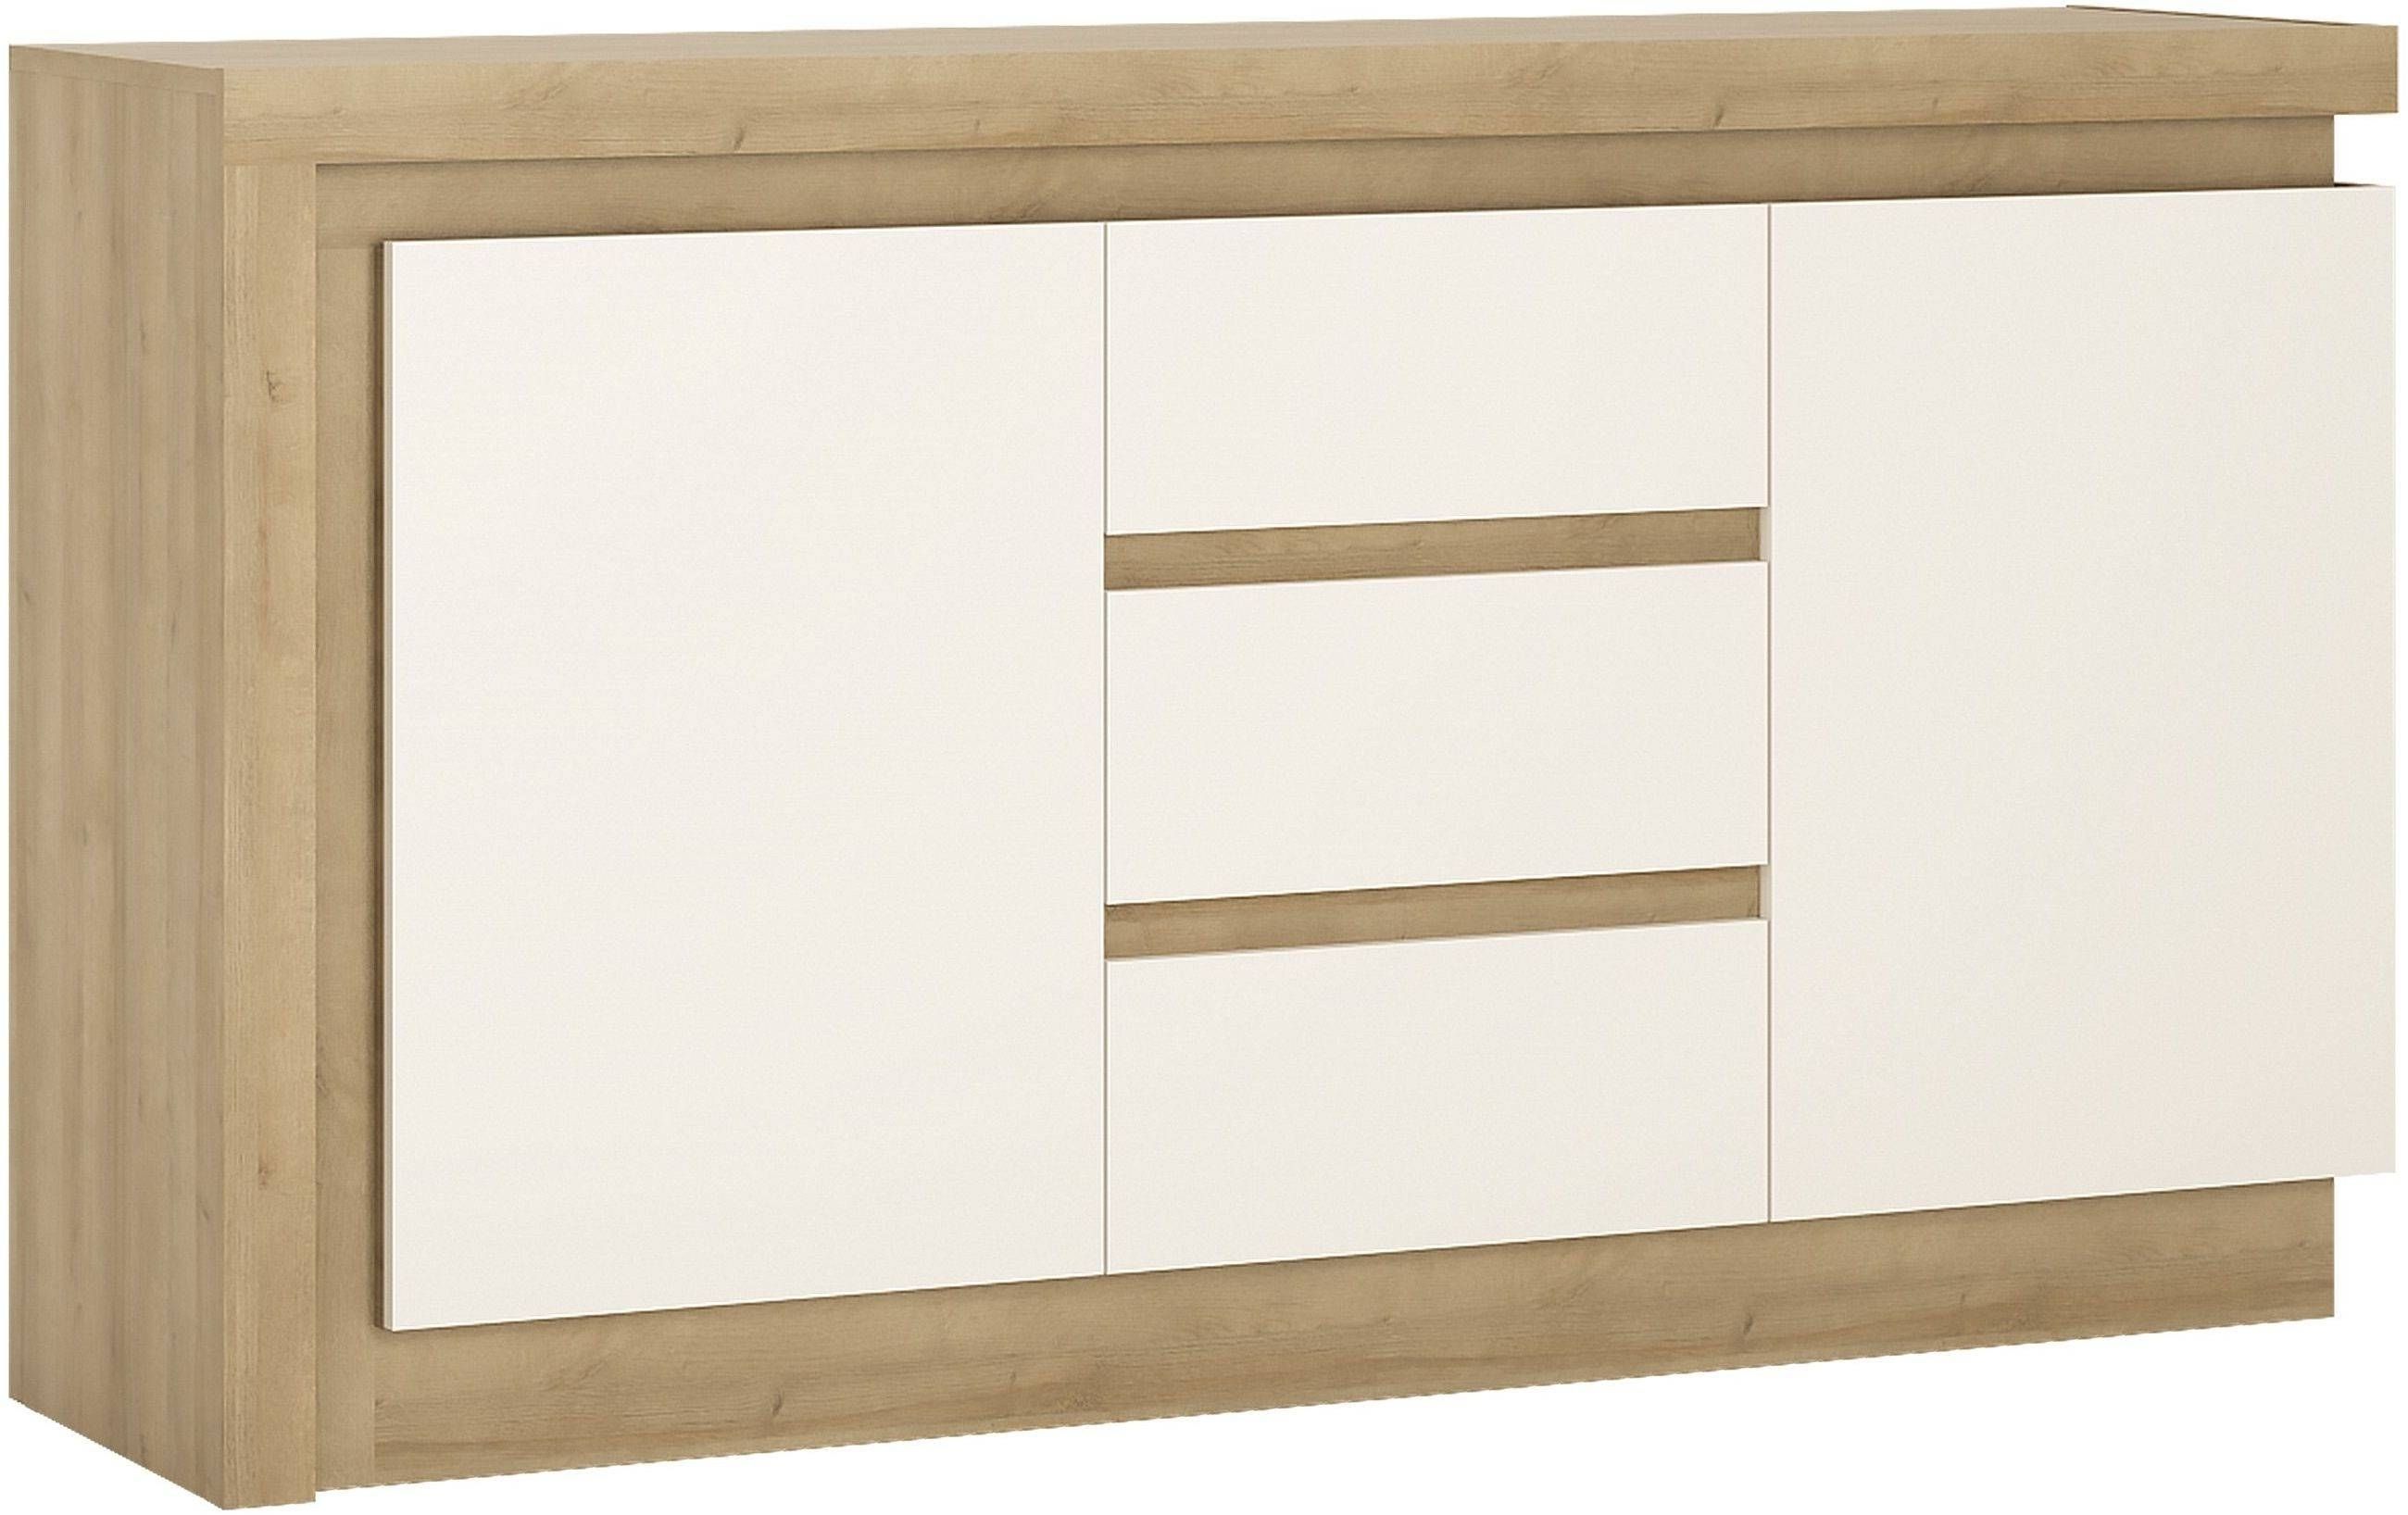 Buy Lyon Riviera Oak And White High Gloss Sideboard – 2 Door 3 Regarding High White Gloss Sideboards (Photo 12 of 15)